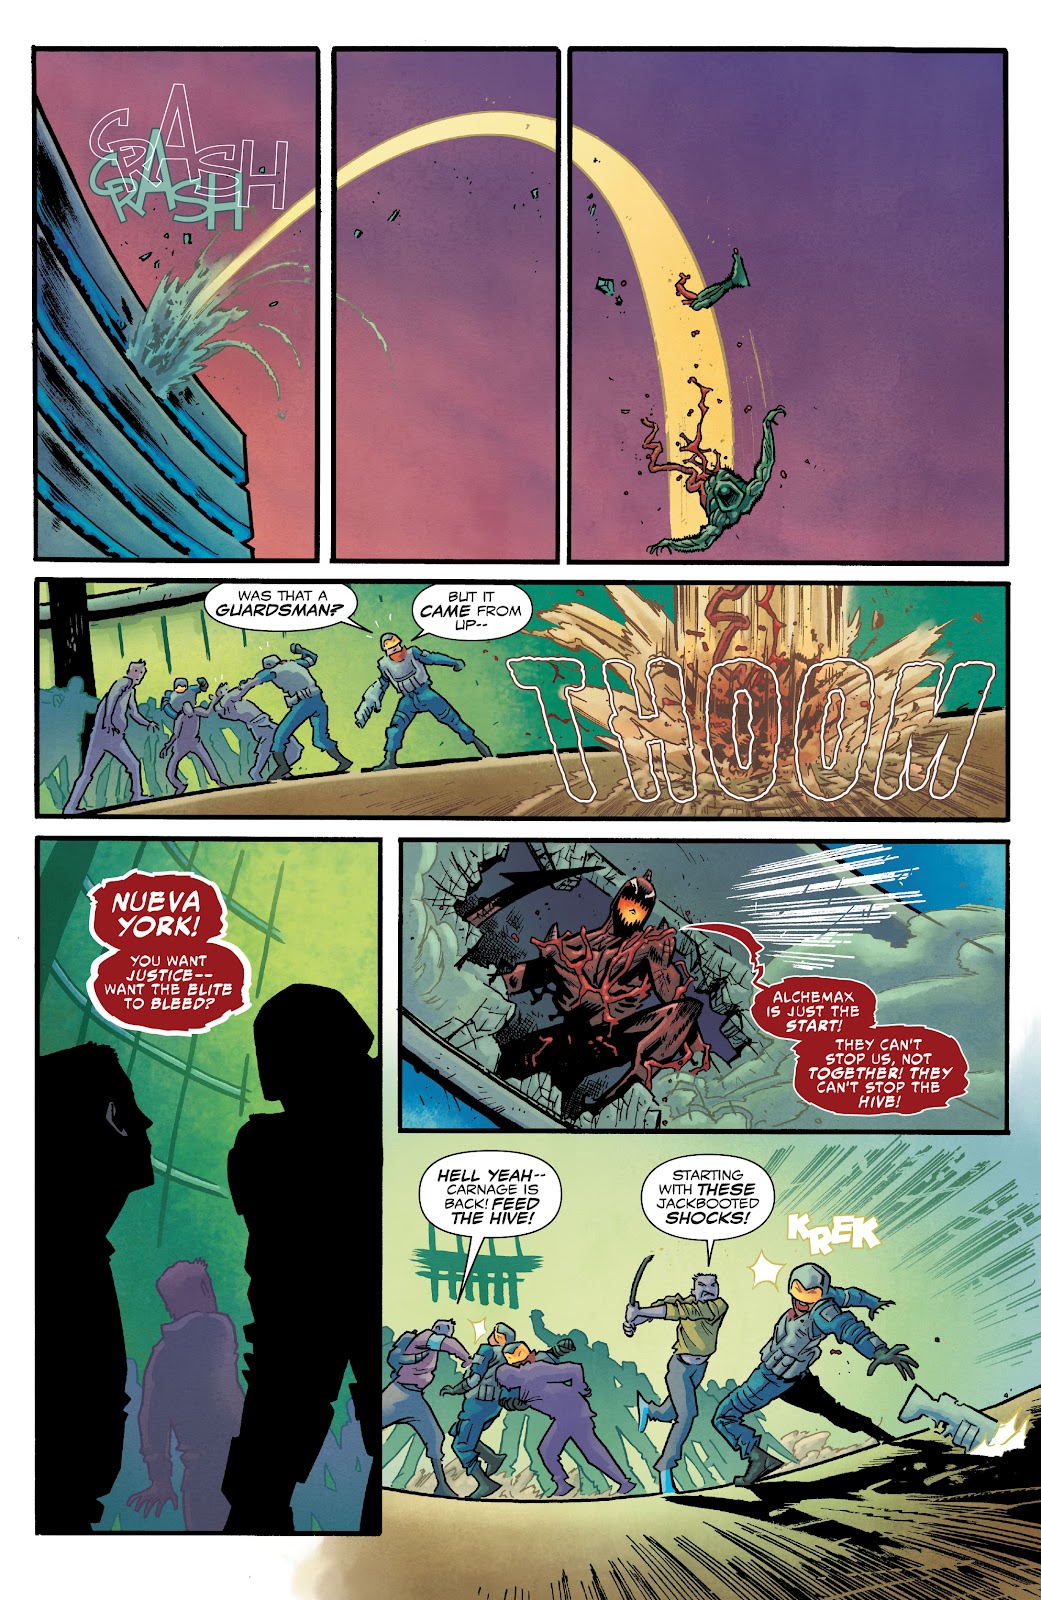 Spider-Man 2099: Dark Genesis issue 2 - Page 9